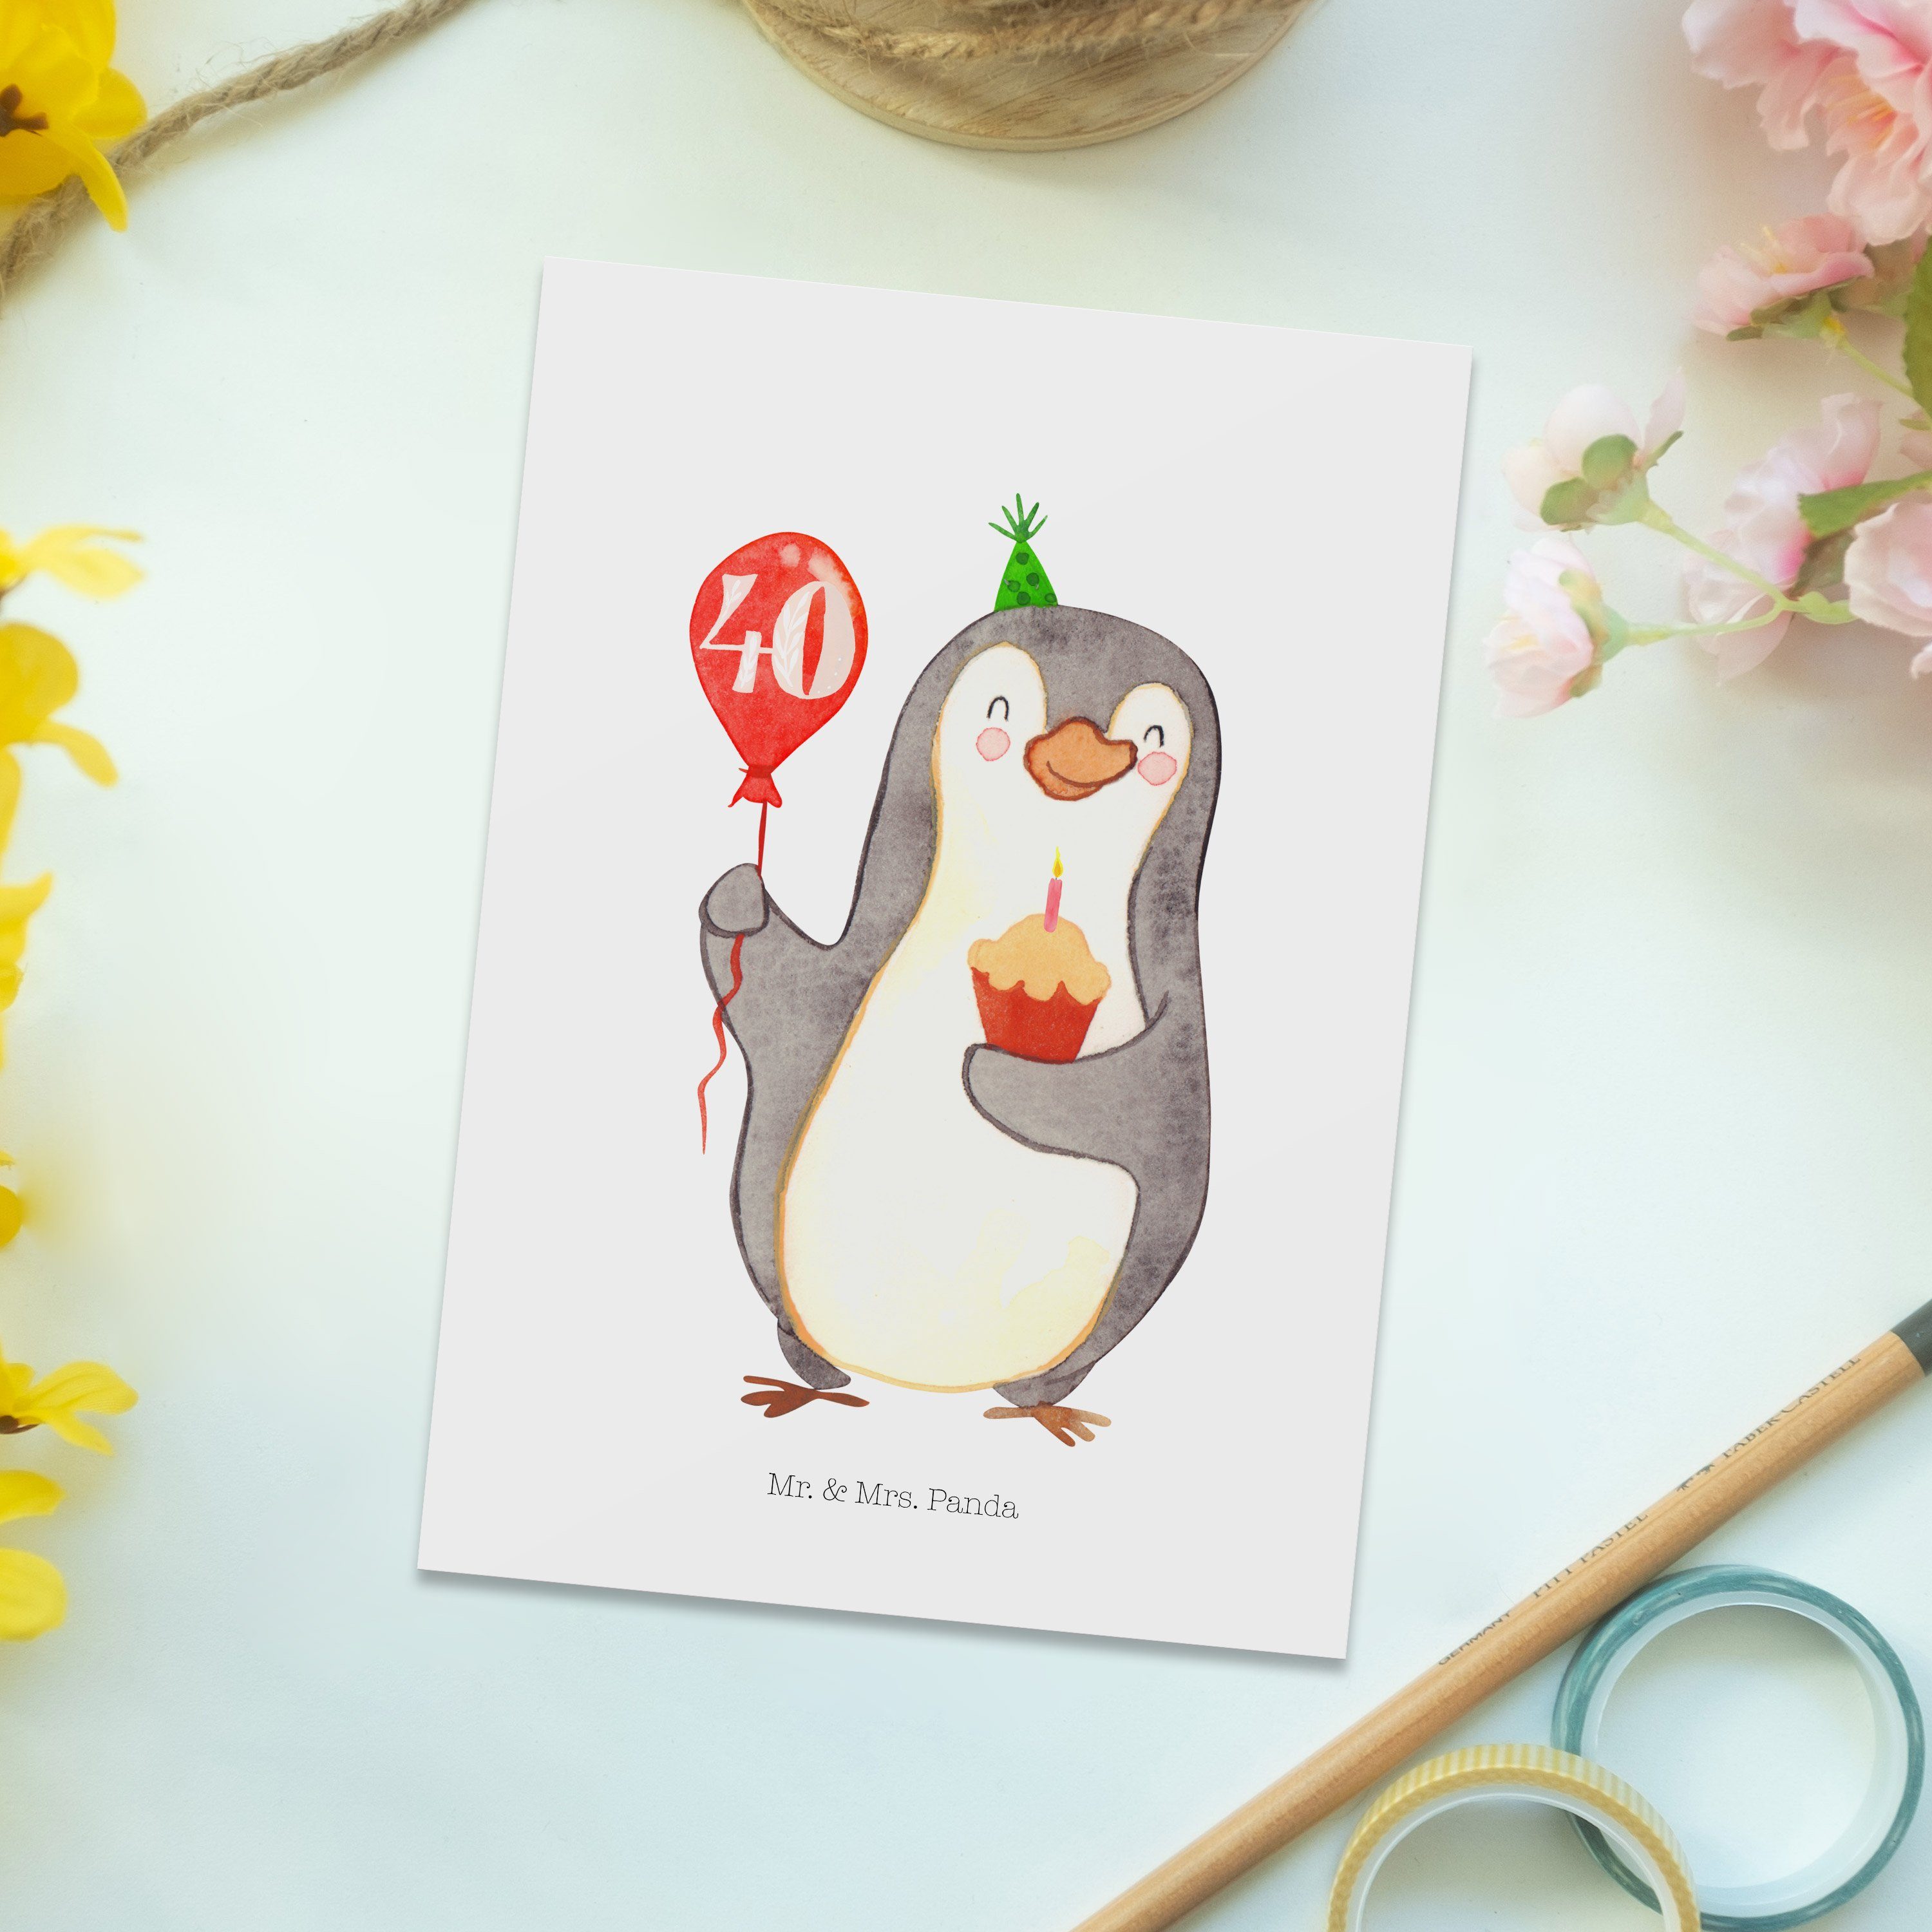 Mr. & Mrs. Panda Postkarte 40. Weiß Geschenkkarte, - G - Geburtstag Geschenk, Pinguin Luftballon